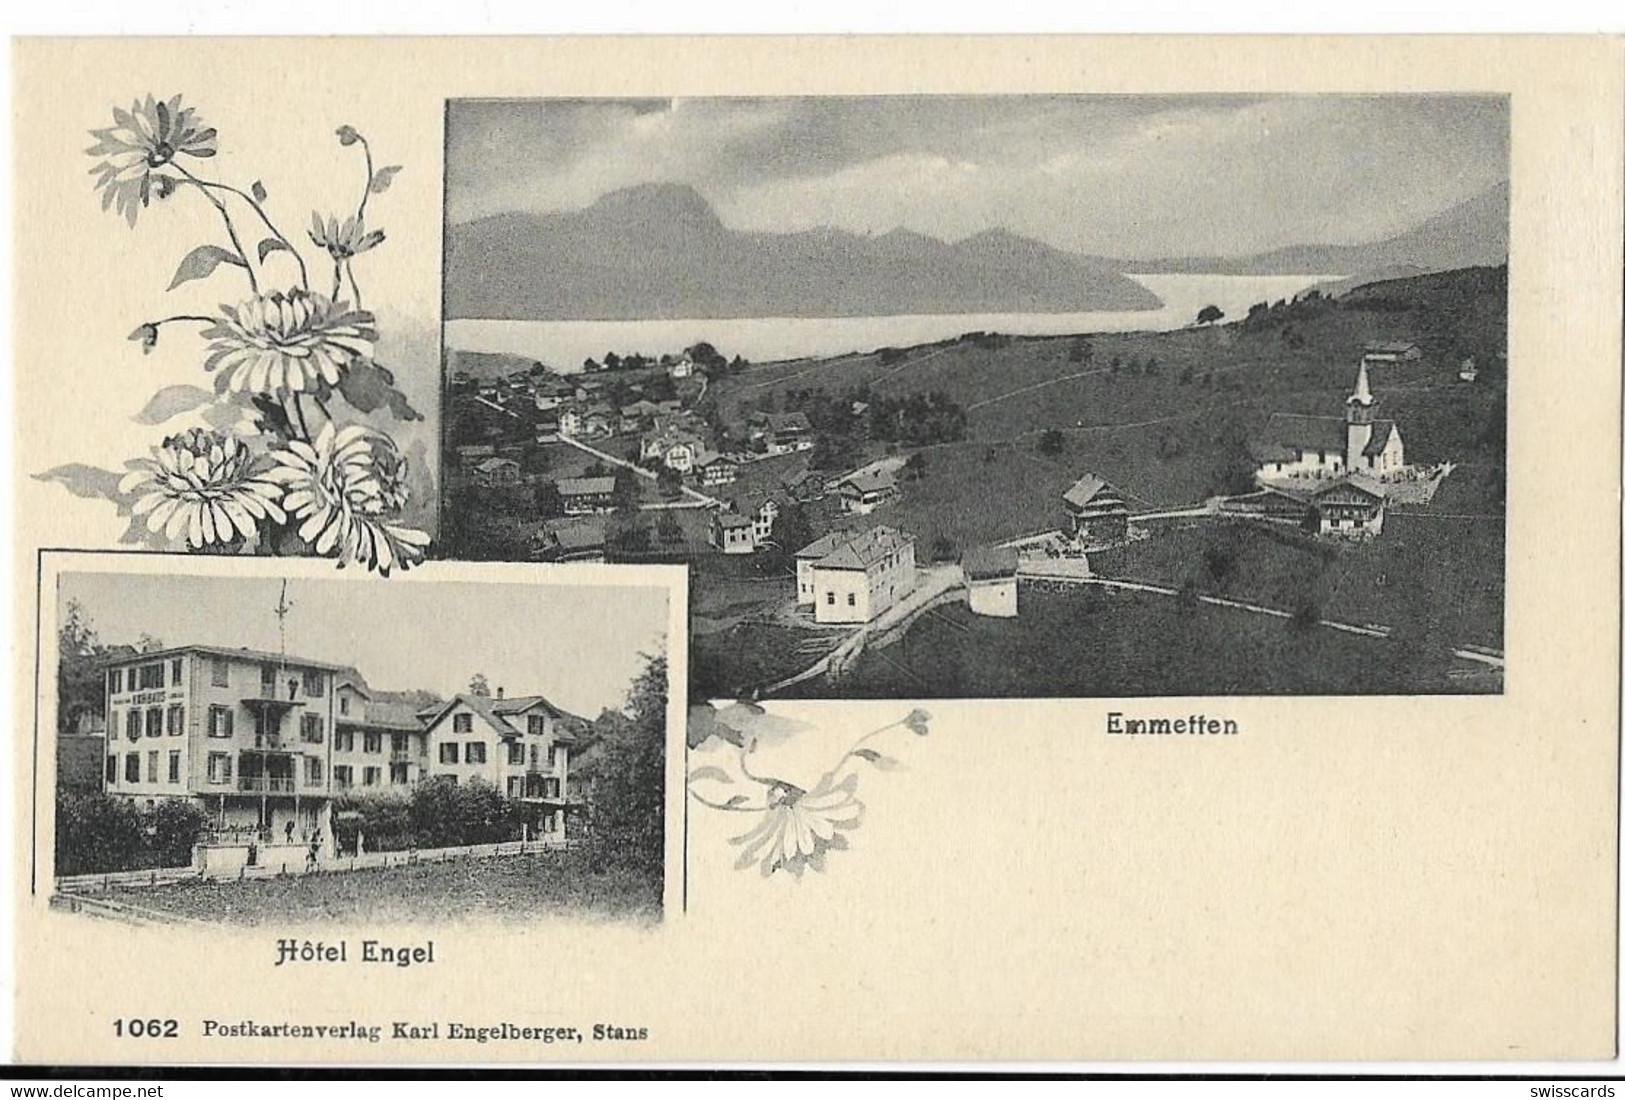 EMMETTEN: 2-Bild-AK Mit Hotel Engel ~1910 - Emmetten